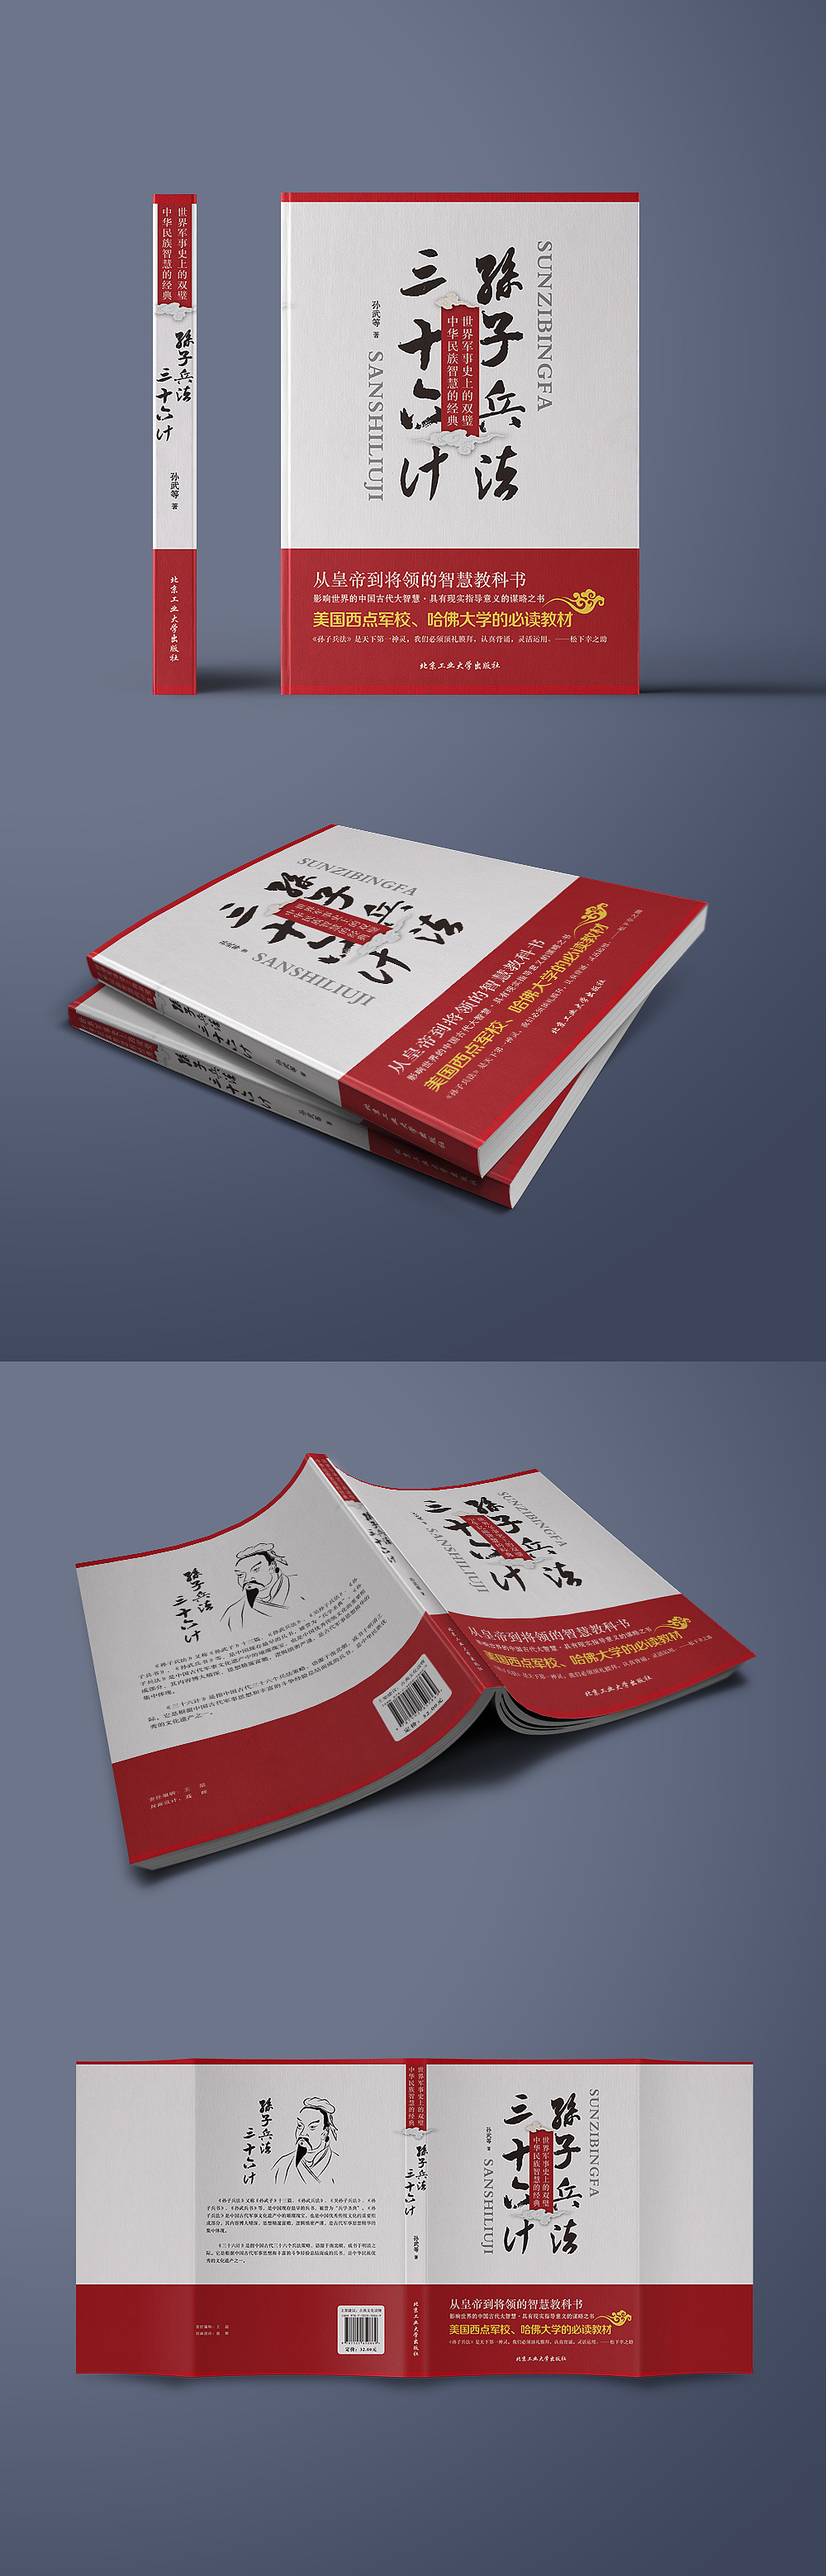 《孙子兵法三十六计》书籍封面装帧设计